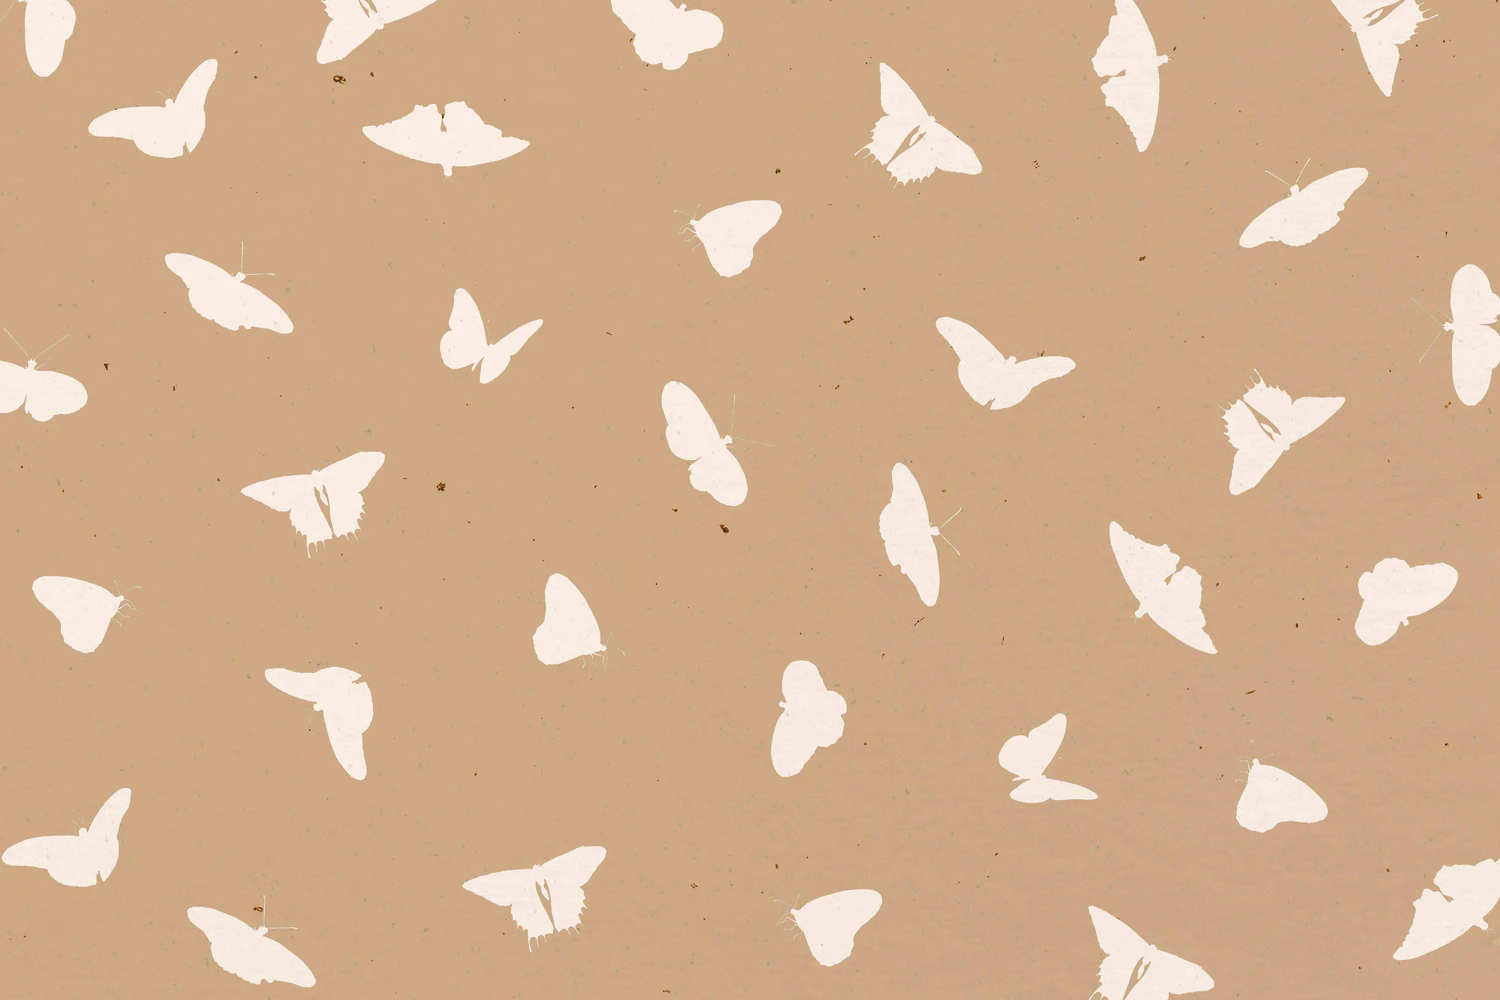 3229 25个蝴蝶拼贴纸纹理图案JPG素材 25 Butterfly Textures